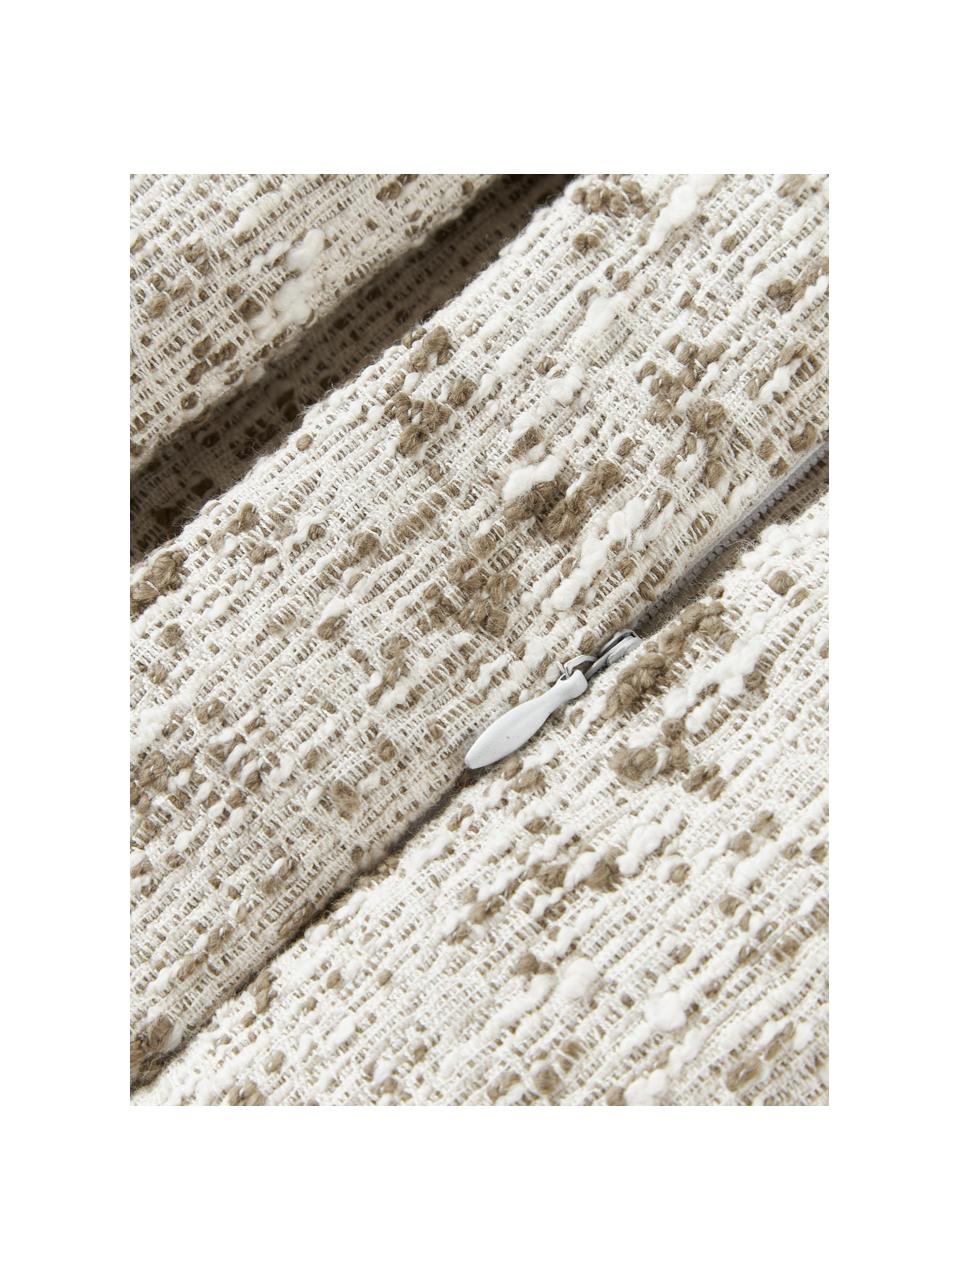 Housse de coussin 50x50 en tissu bouclé Talea, Tissu bouclé (92 % coton, 8 % polyester)

Le bouclé est une matière qui se caractérise par sa texture aux courbes irrégulières. La surface caractéristique est créée par des boucles tissées de fils différents qui confèrent au tissu une structure unique. La structure bouclée a un effet à la fois isolant et moelleux, ce qui rend le tissu particulièrement douillet, Vert olive, blanc cassé, larg. 50 x long. 50 cm